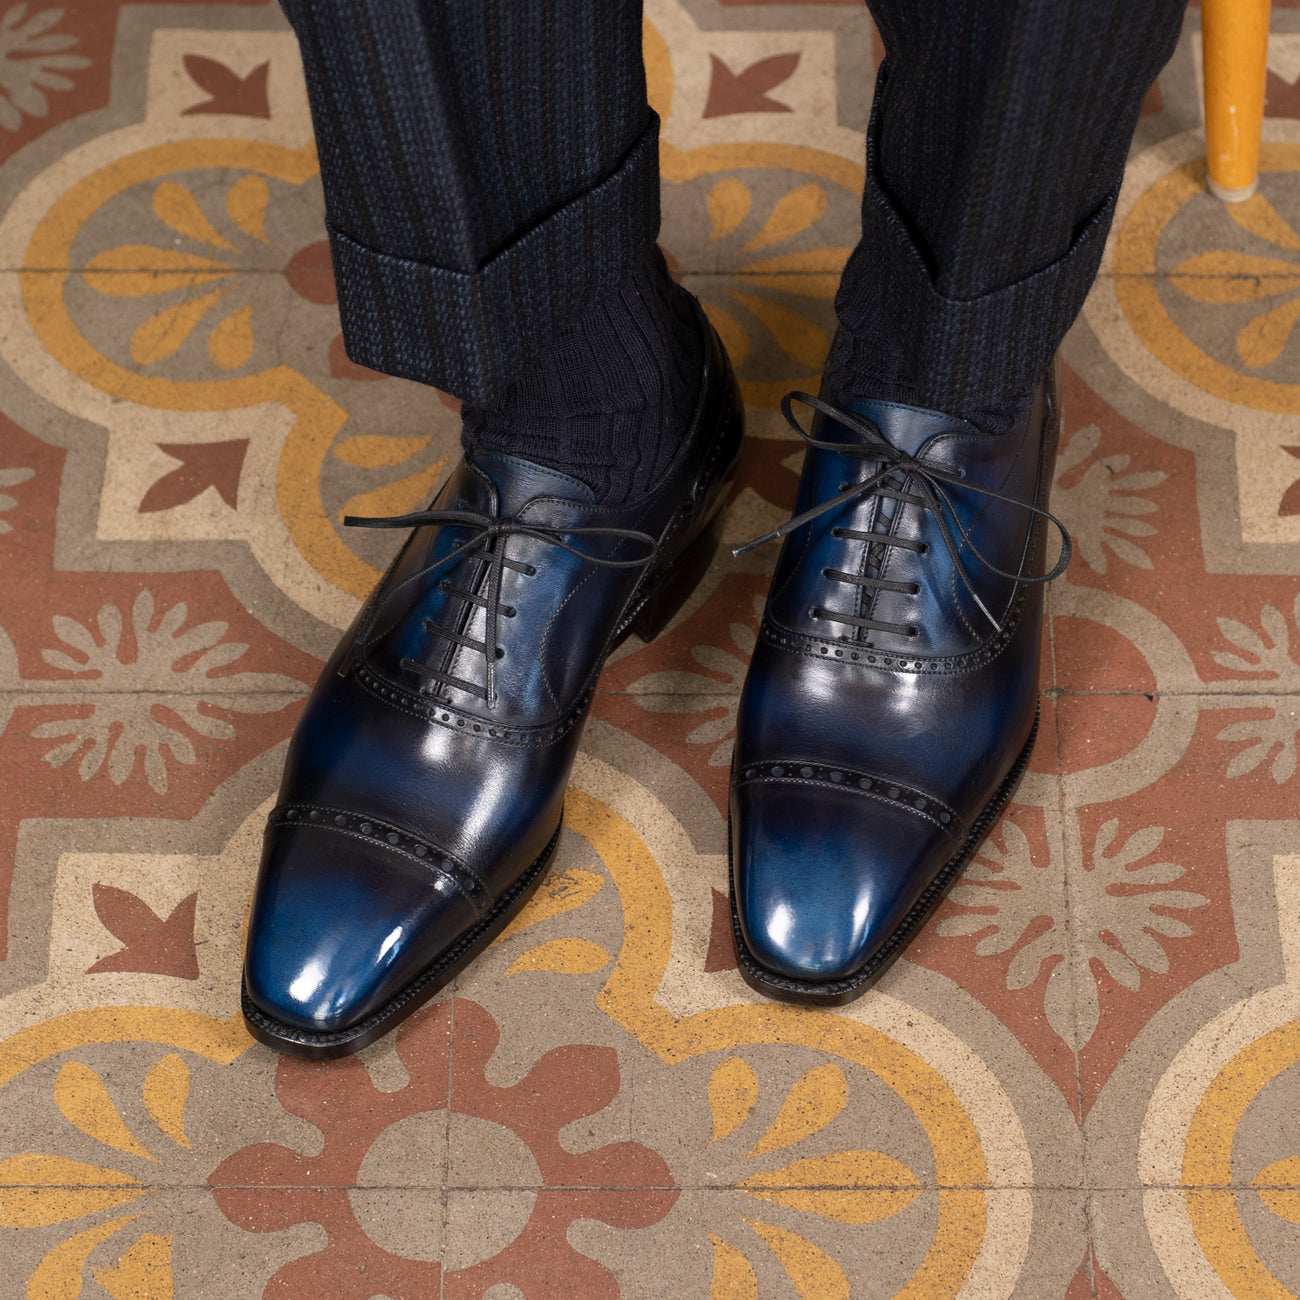 Ricard Balmoral Oxford by Norman Vilalta Mens Shoes